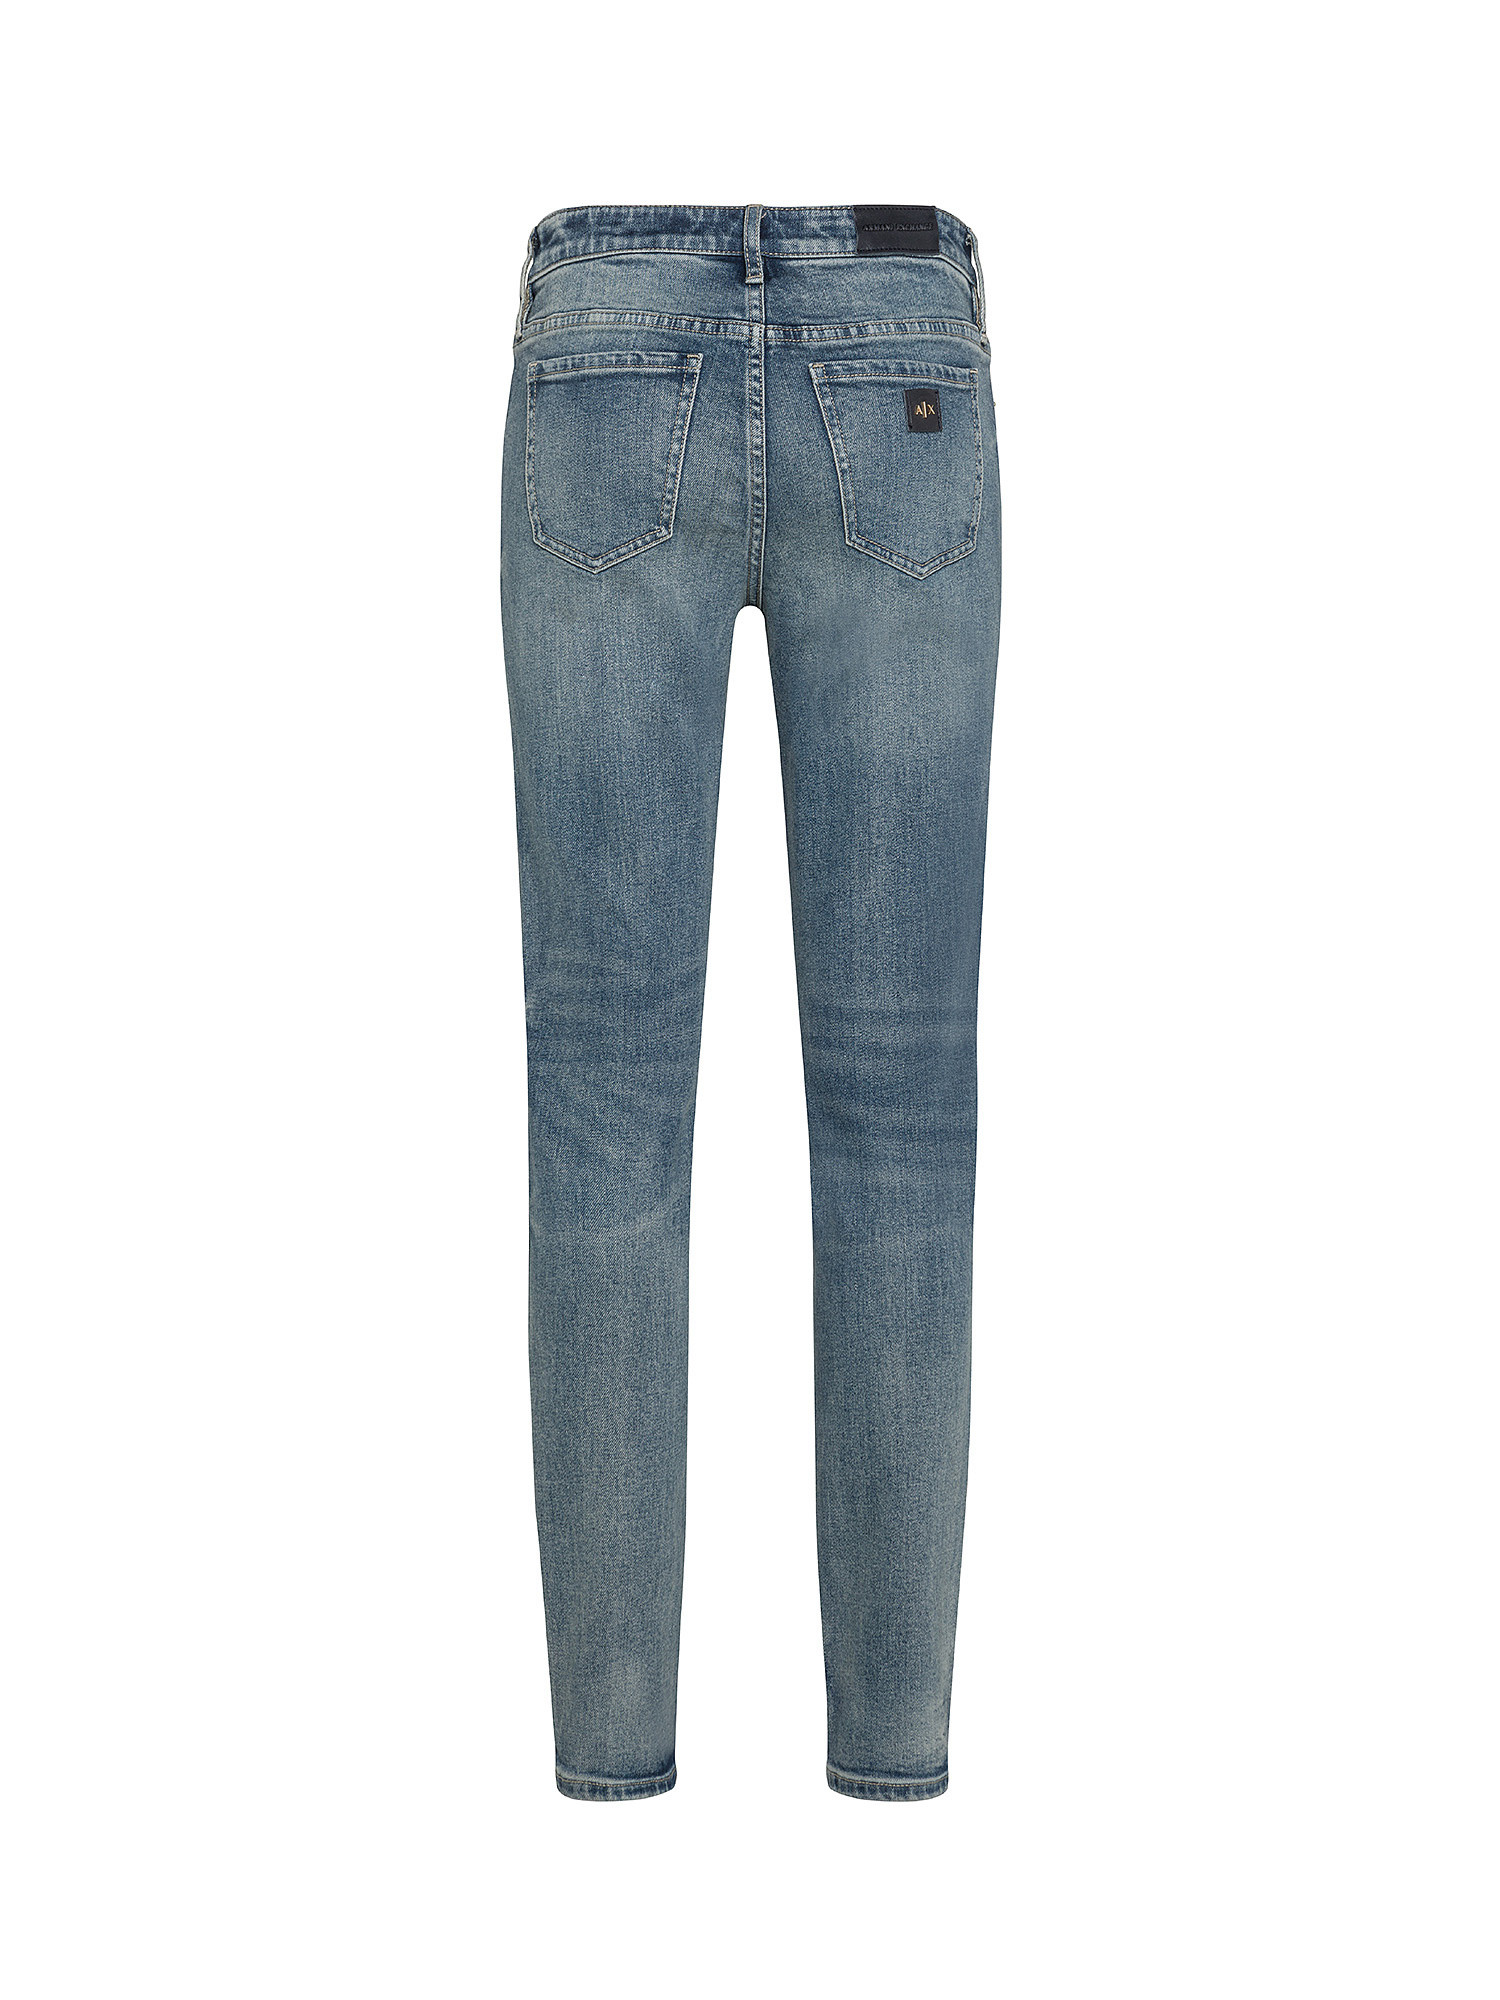 Armani Exchange - Jeans super skinny cinque tasche, Denim, large image number 1